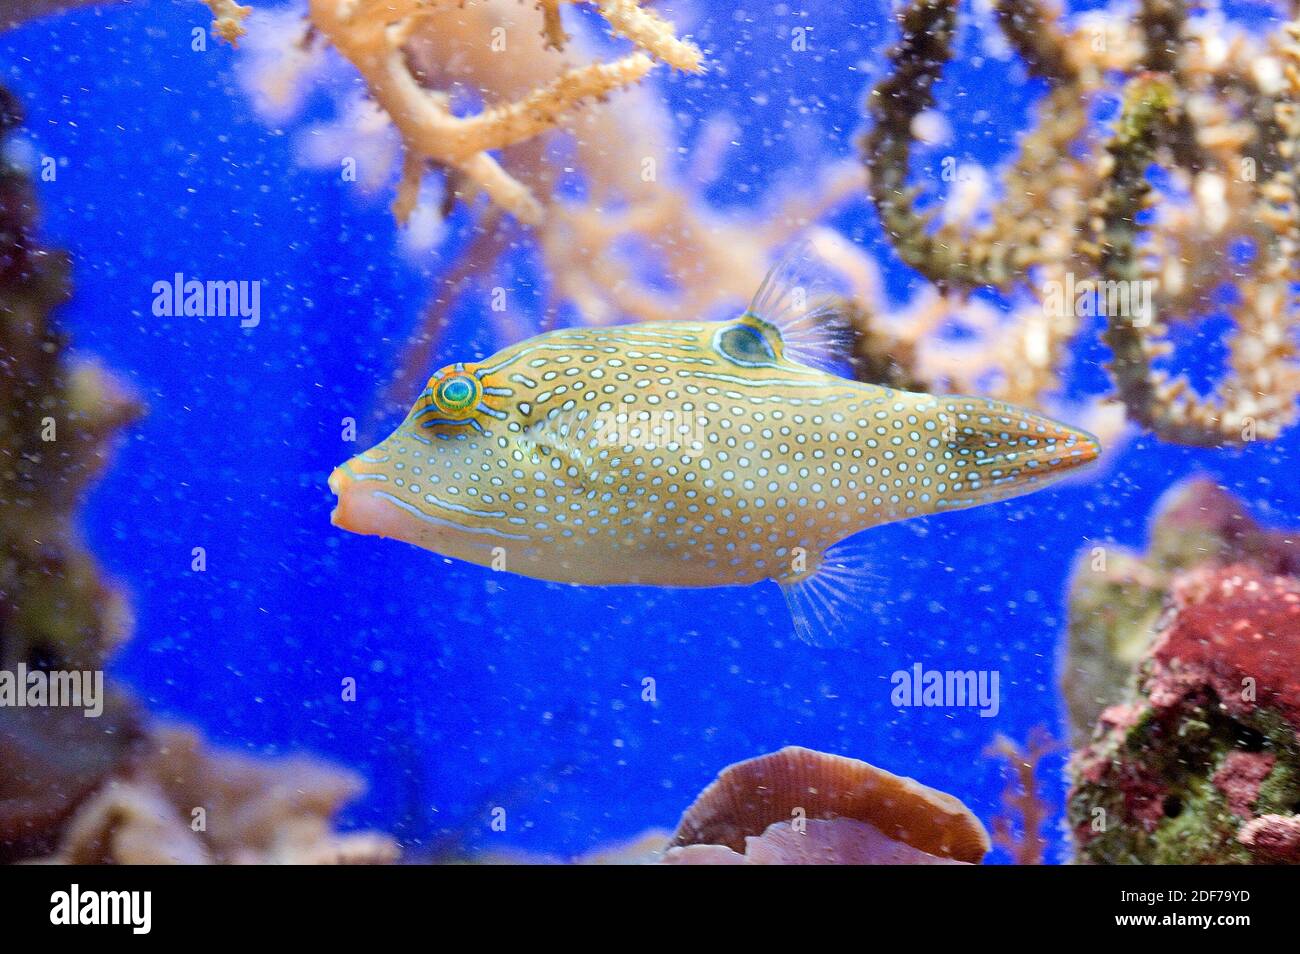 El filefish raspado (Aluterus scriptus) es un pez marino nativo de Océanos tropicales. Foto de stock